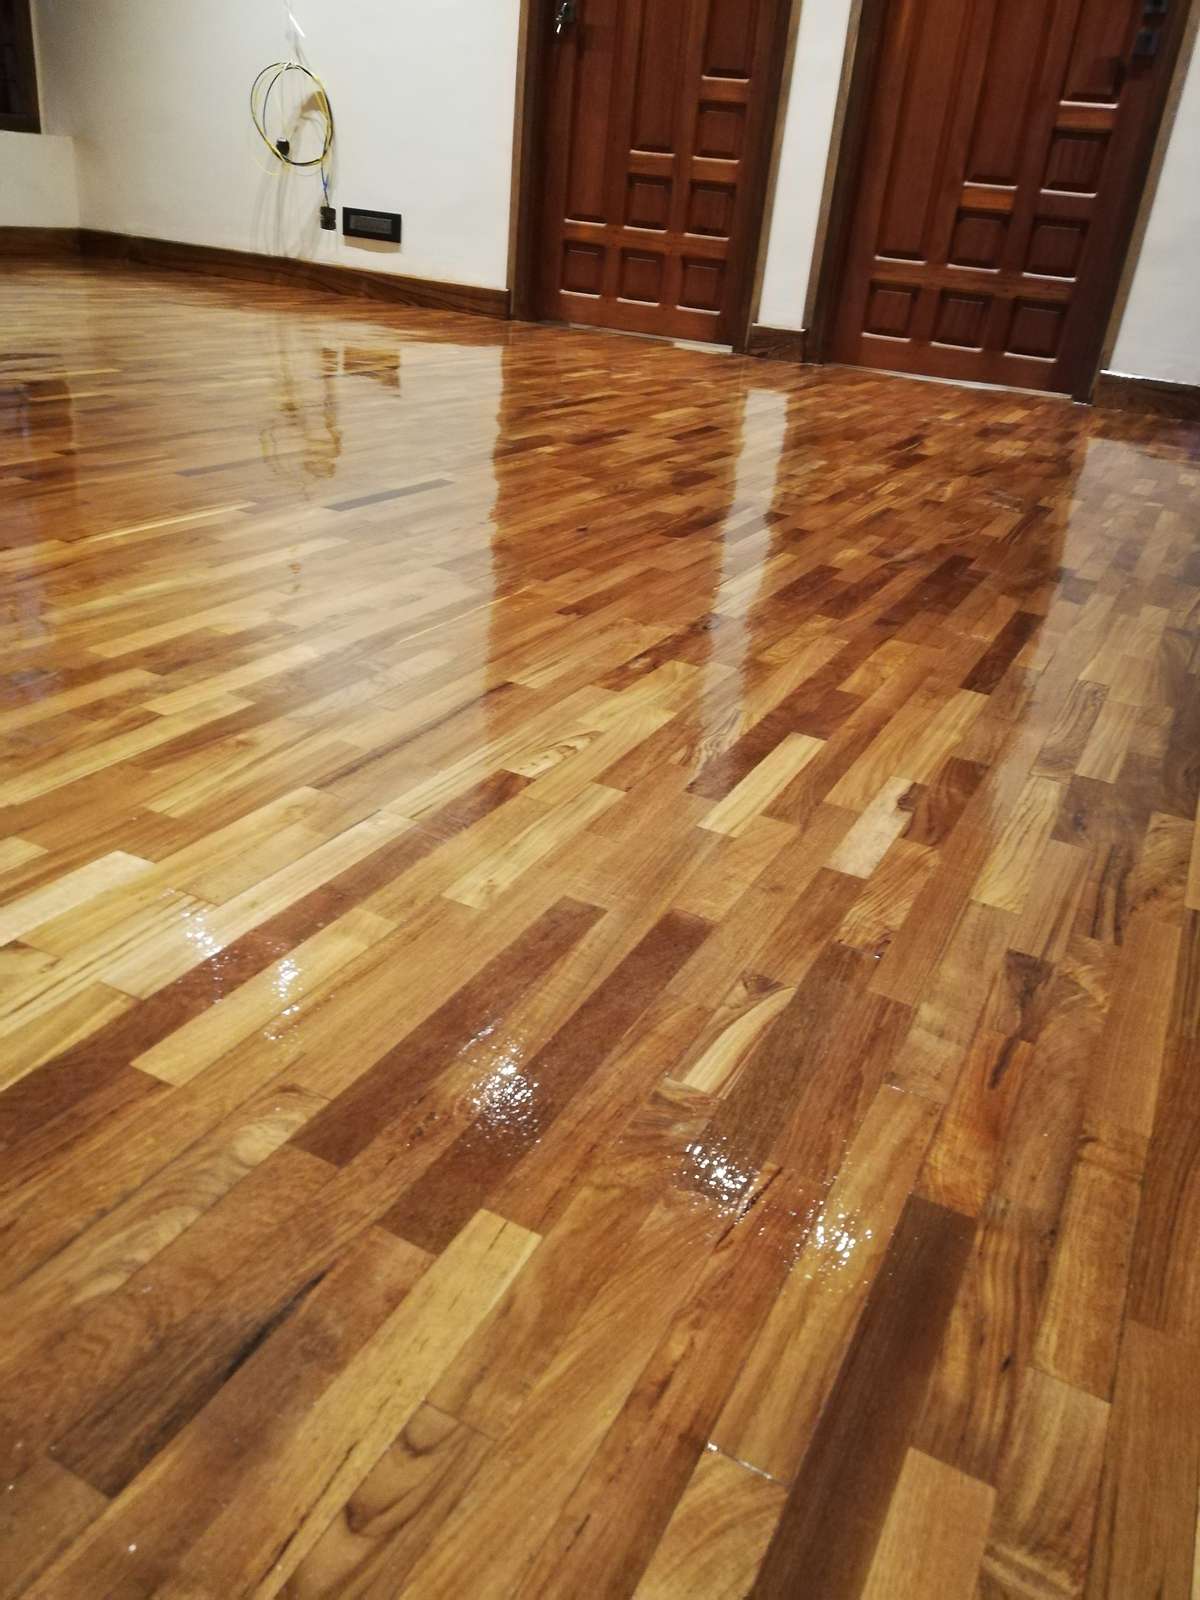 Natural wooden floors
Rose wood, teak sqf-500
